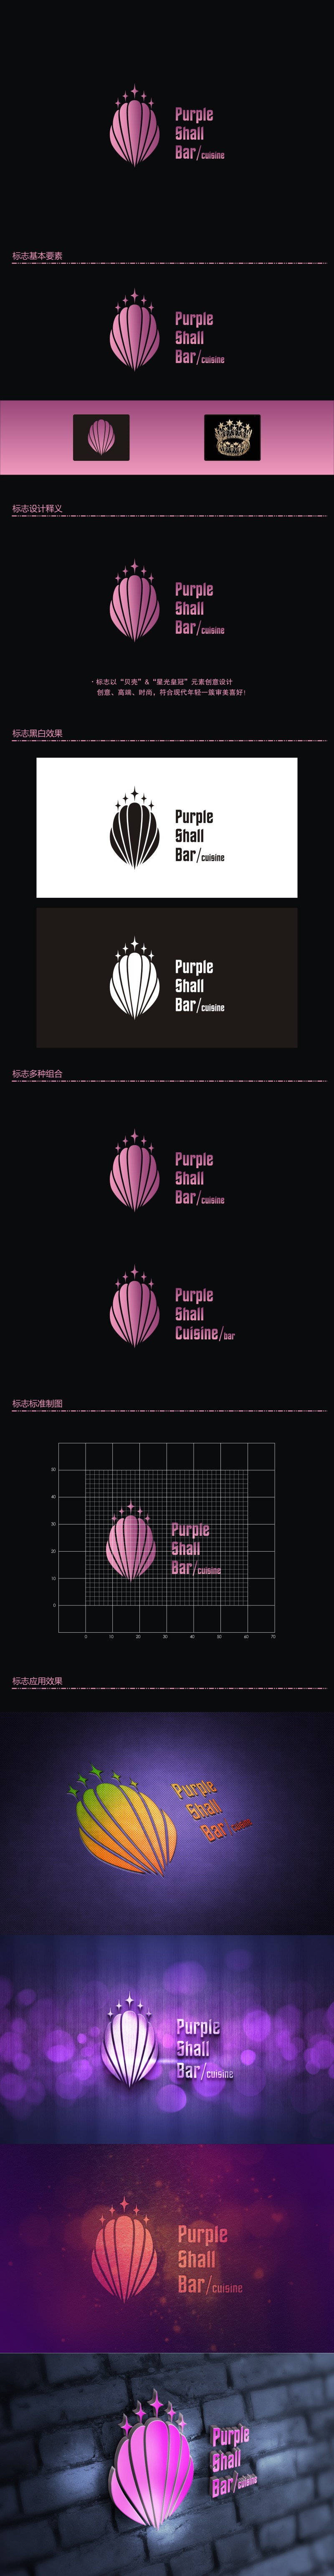 陈国伟的紫贝壳酒吧/餐饮Purple shall bar/cuisinelogo设计